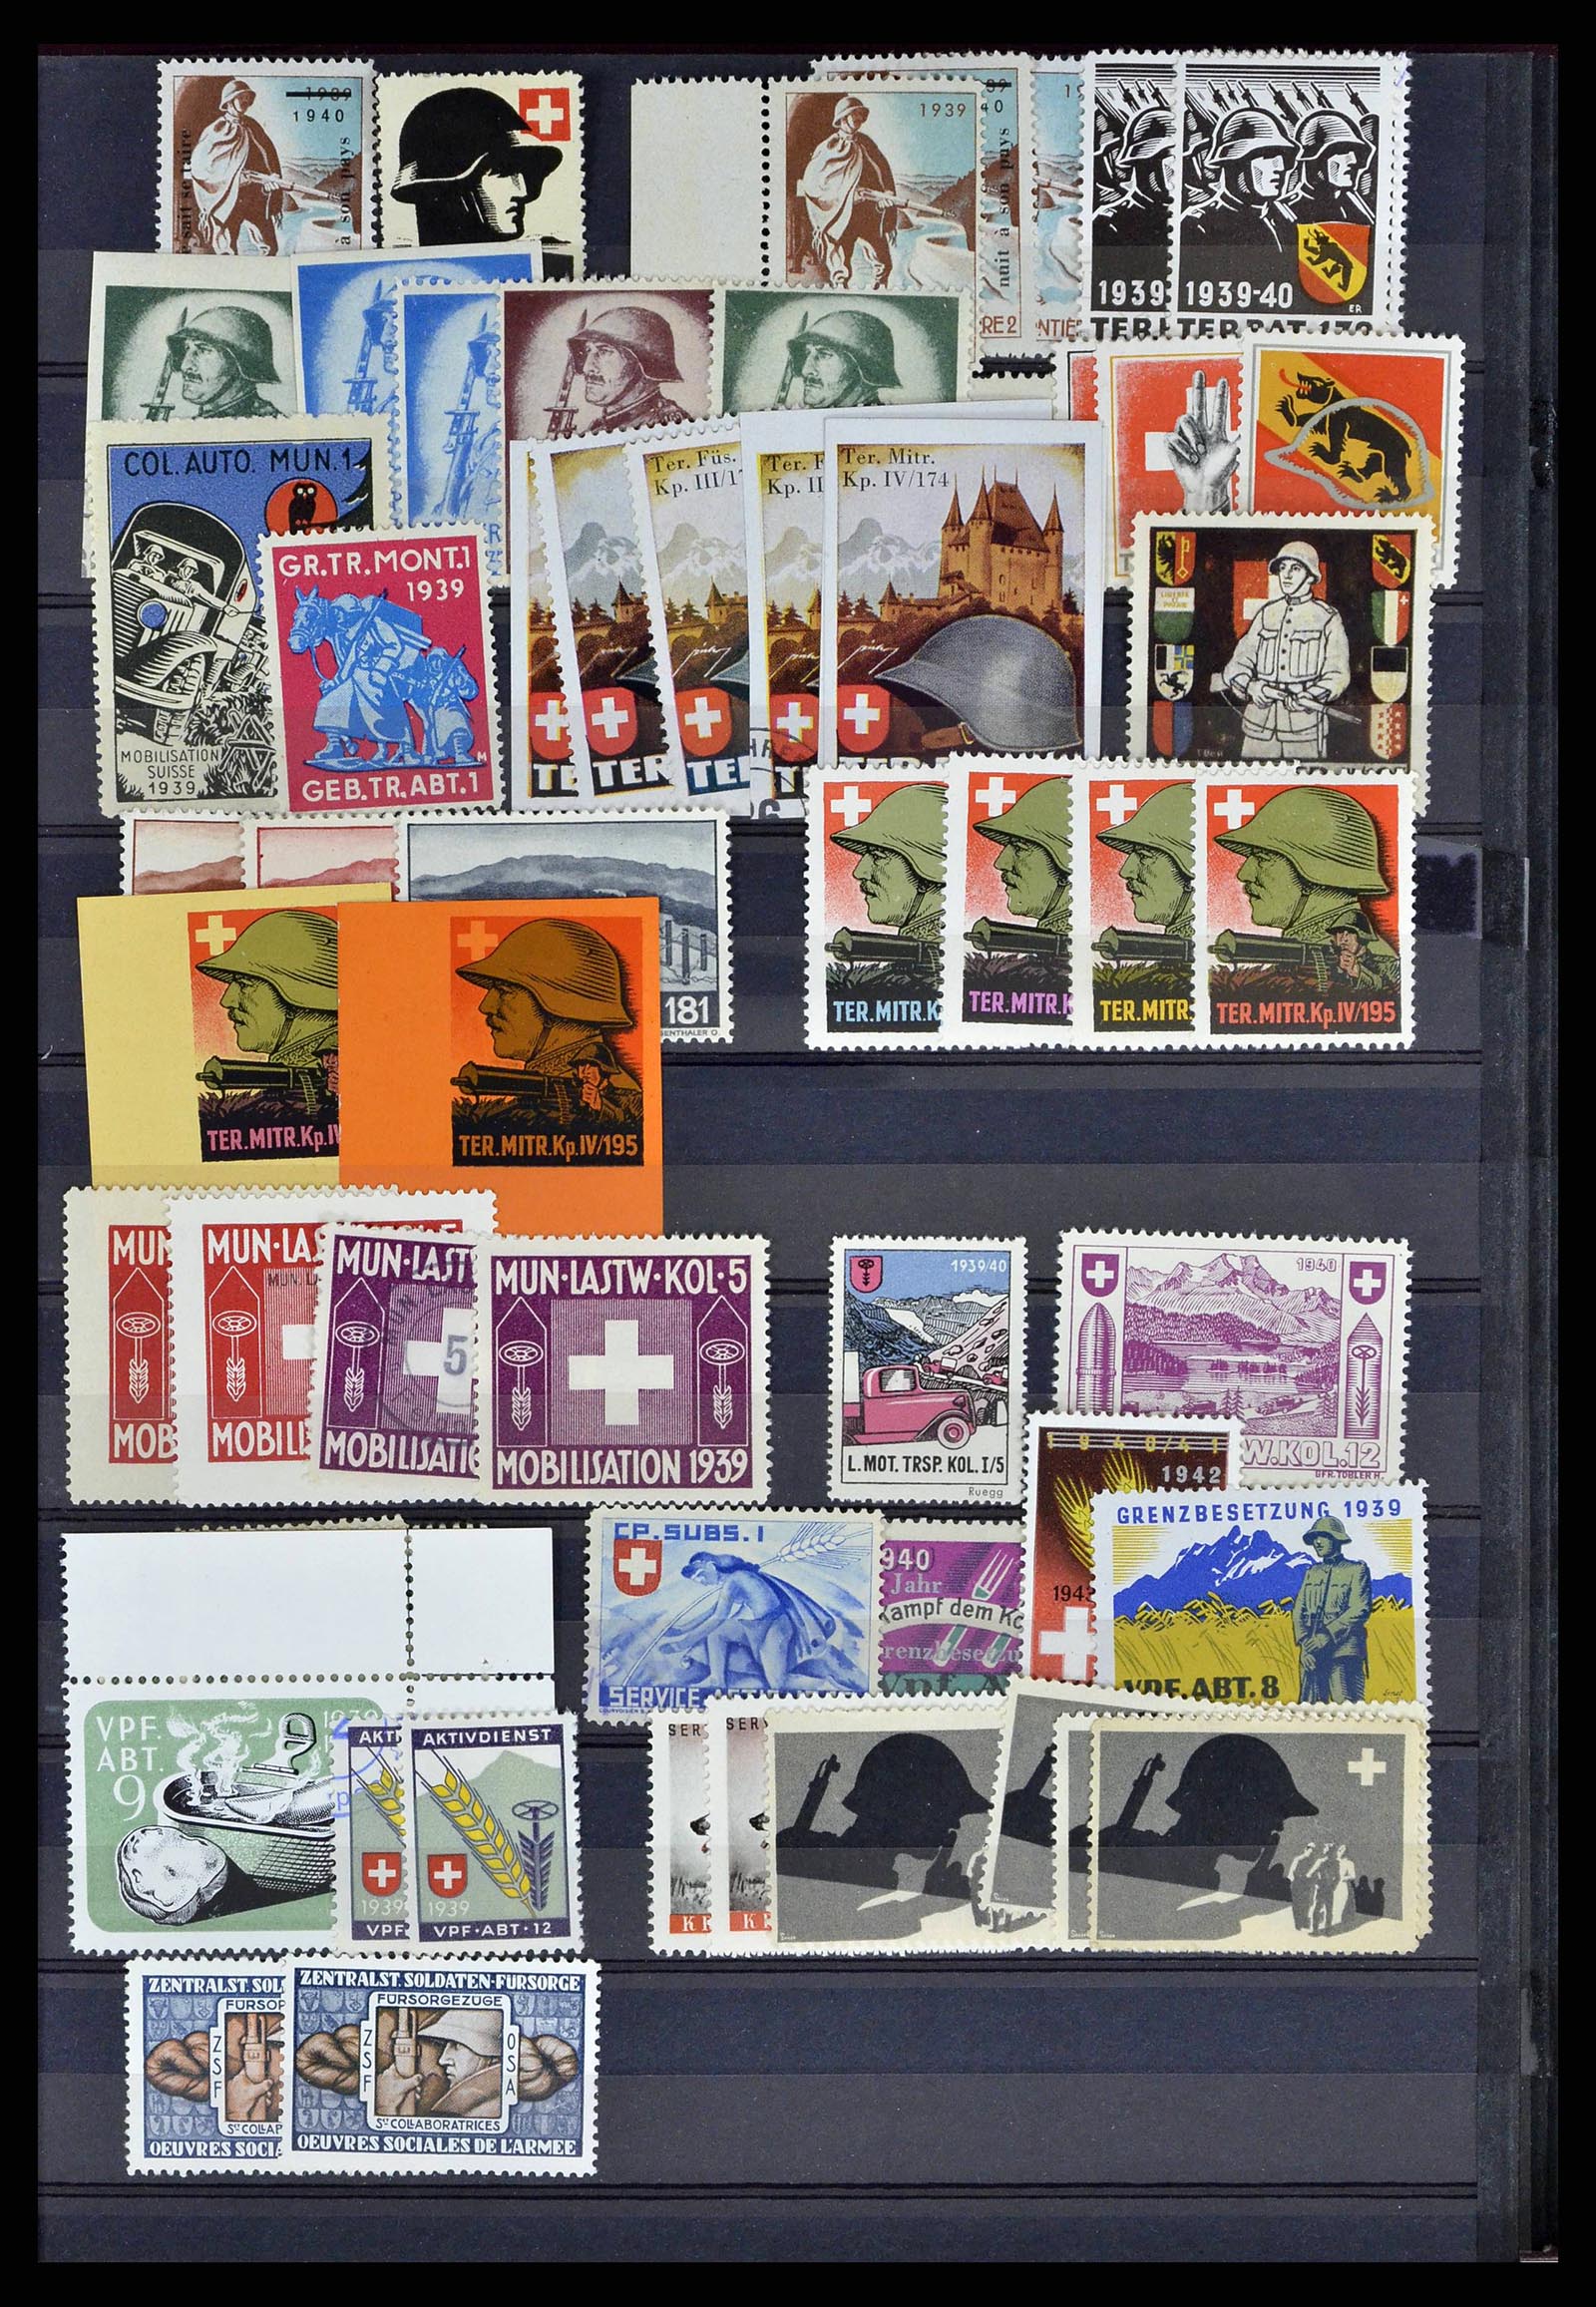 38768 0051 - Stamp collection 38768 Switzerland soldierstamps 1914-1945.